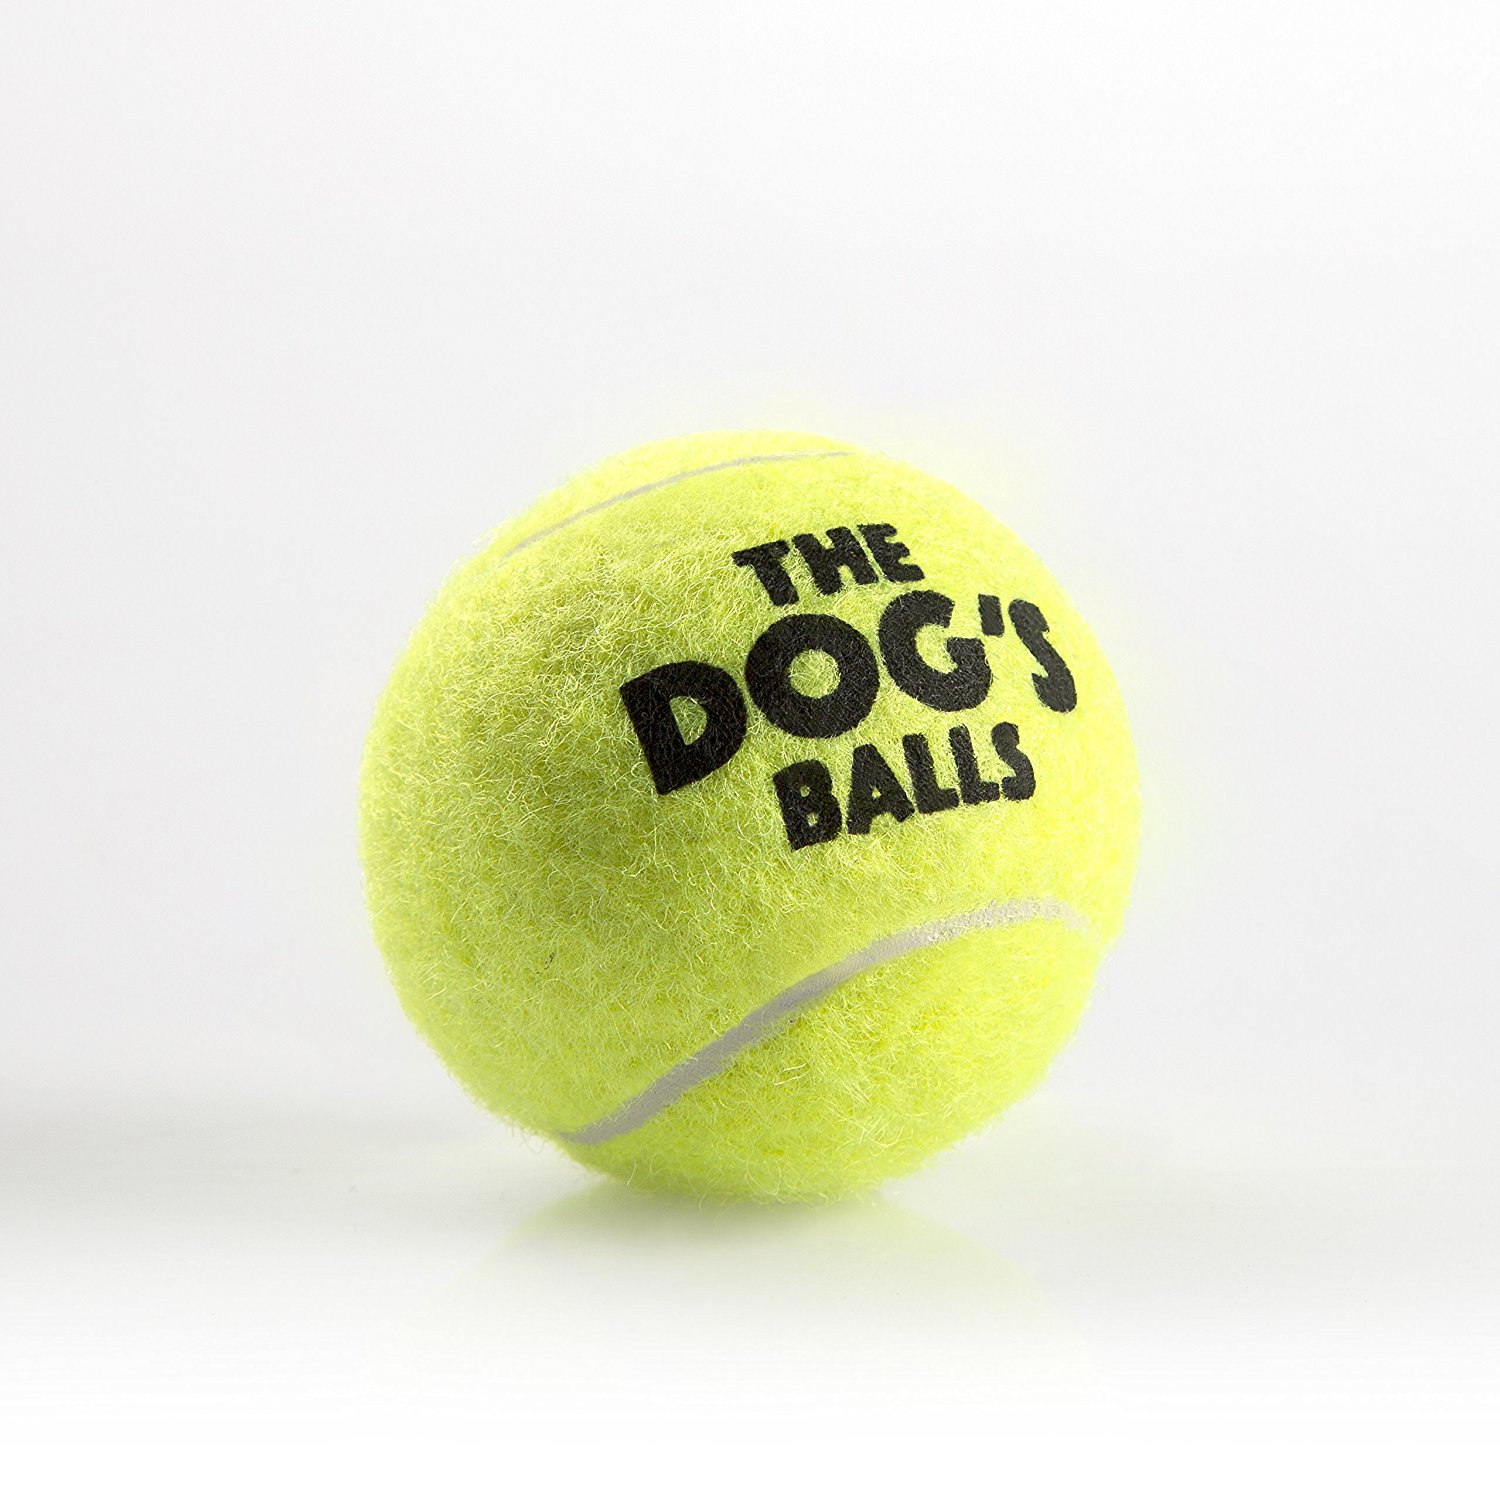 Pet Supplies : The Little Dog's Balls - 6 Small Yellow Tennis Balls ...